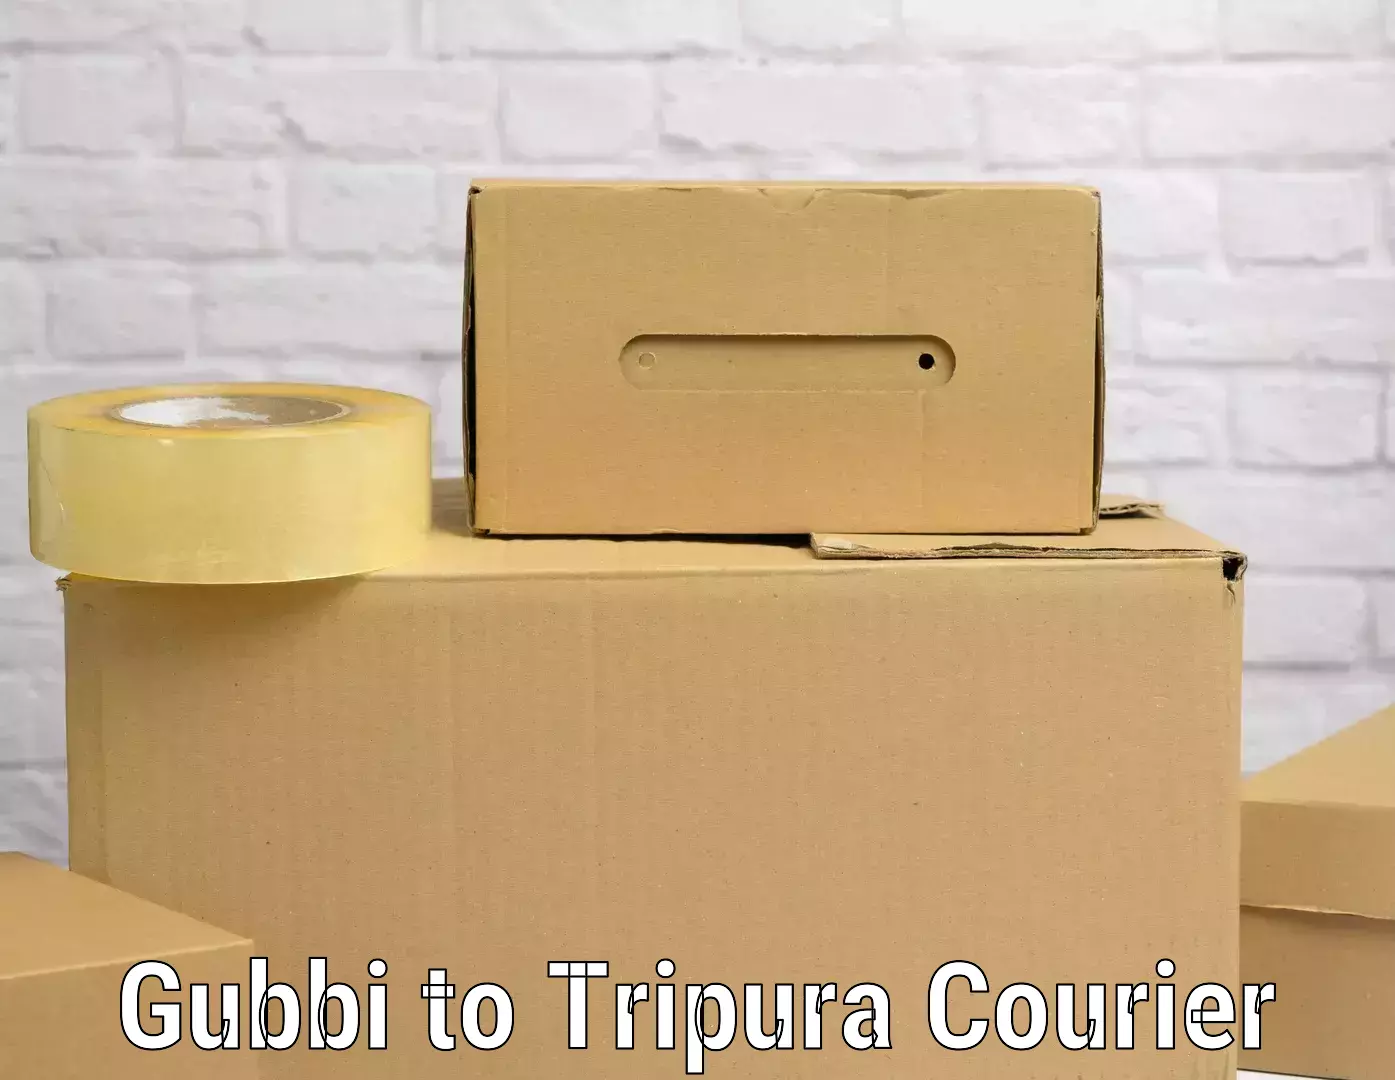 Door-to-door baggage service Gubbi to Tripura